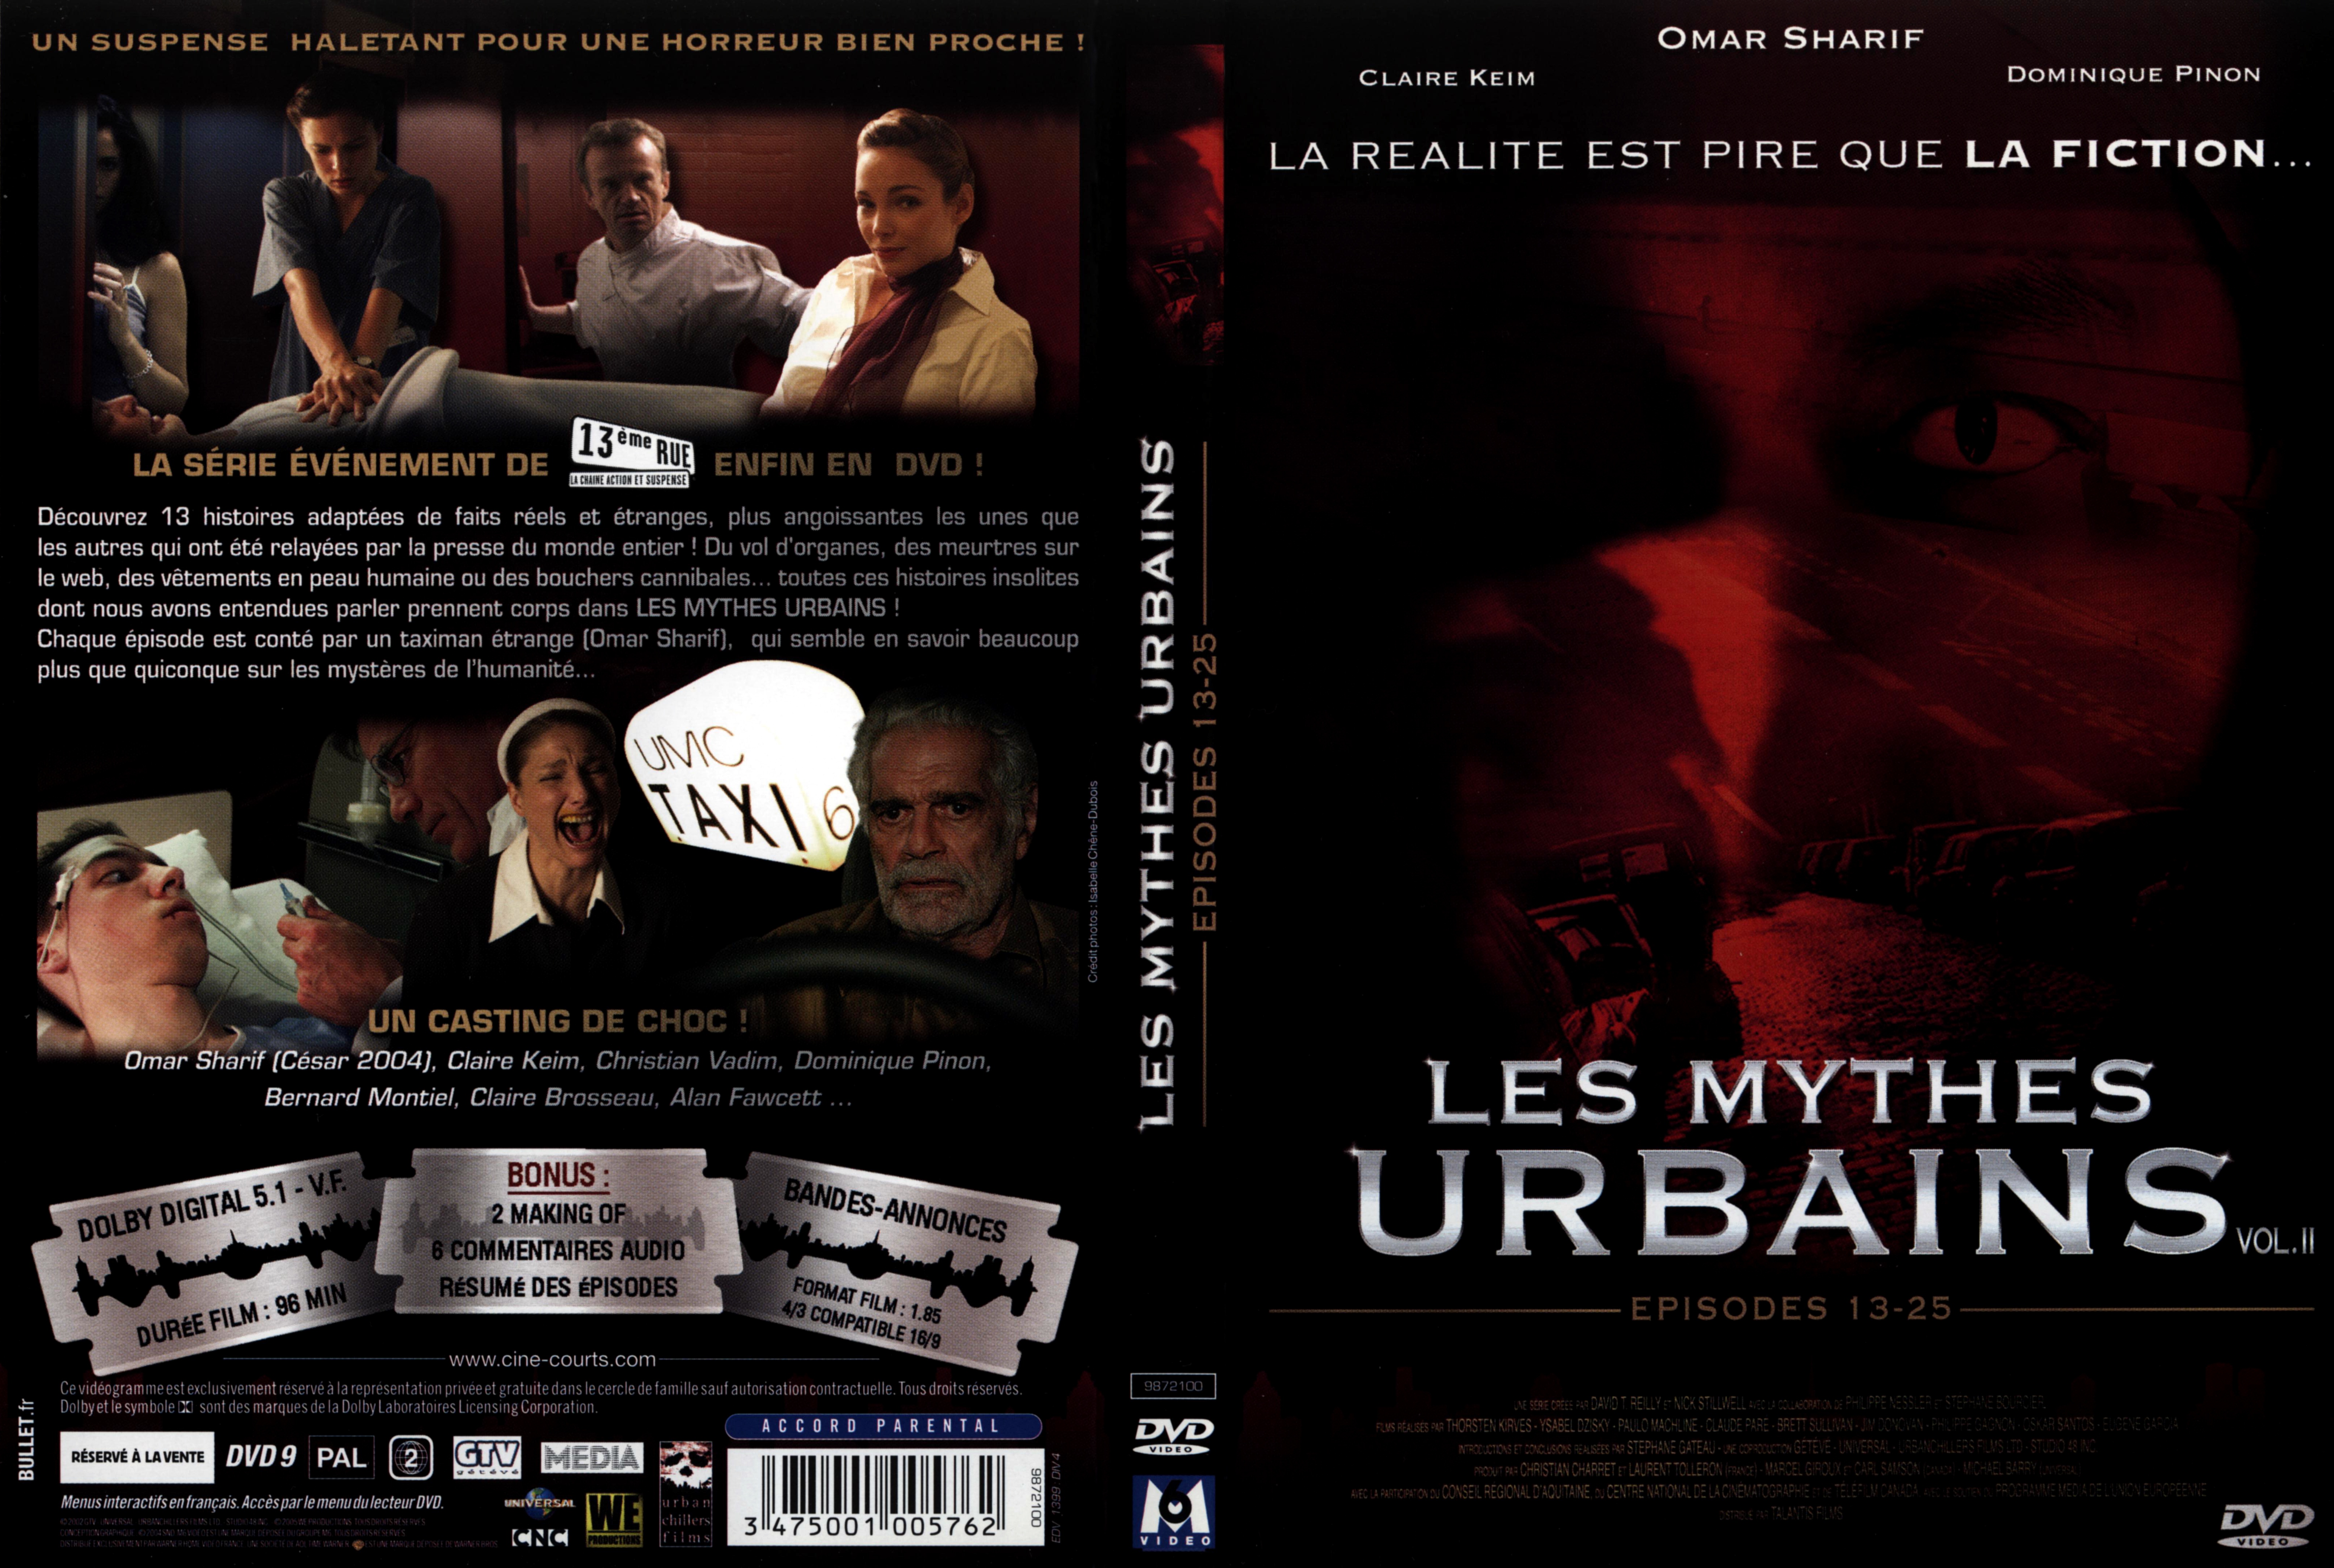 Jaquette DVD Les mythes urbains vol 2